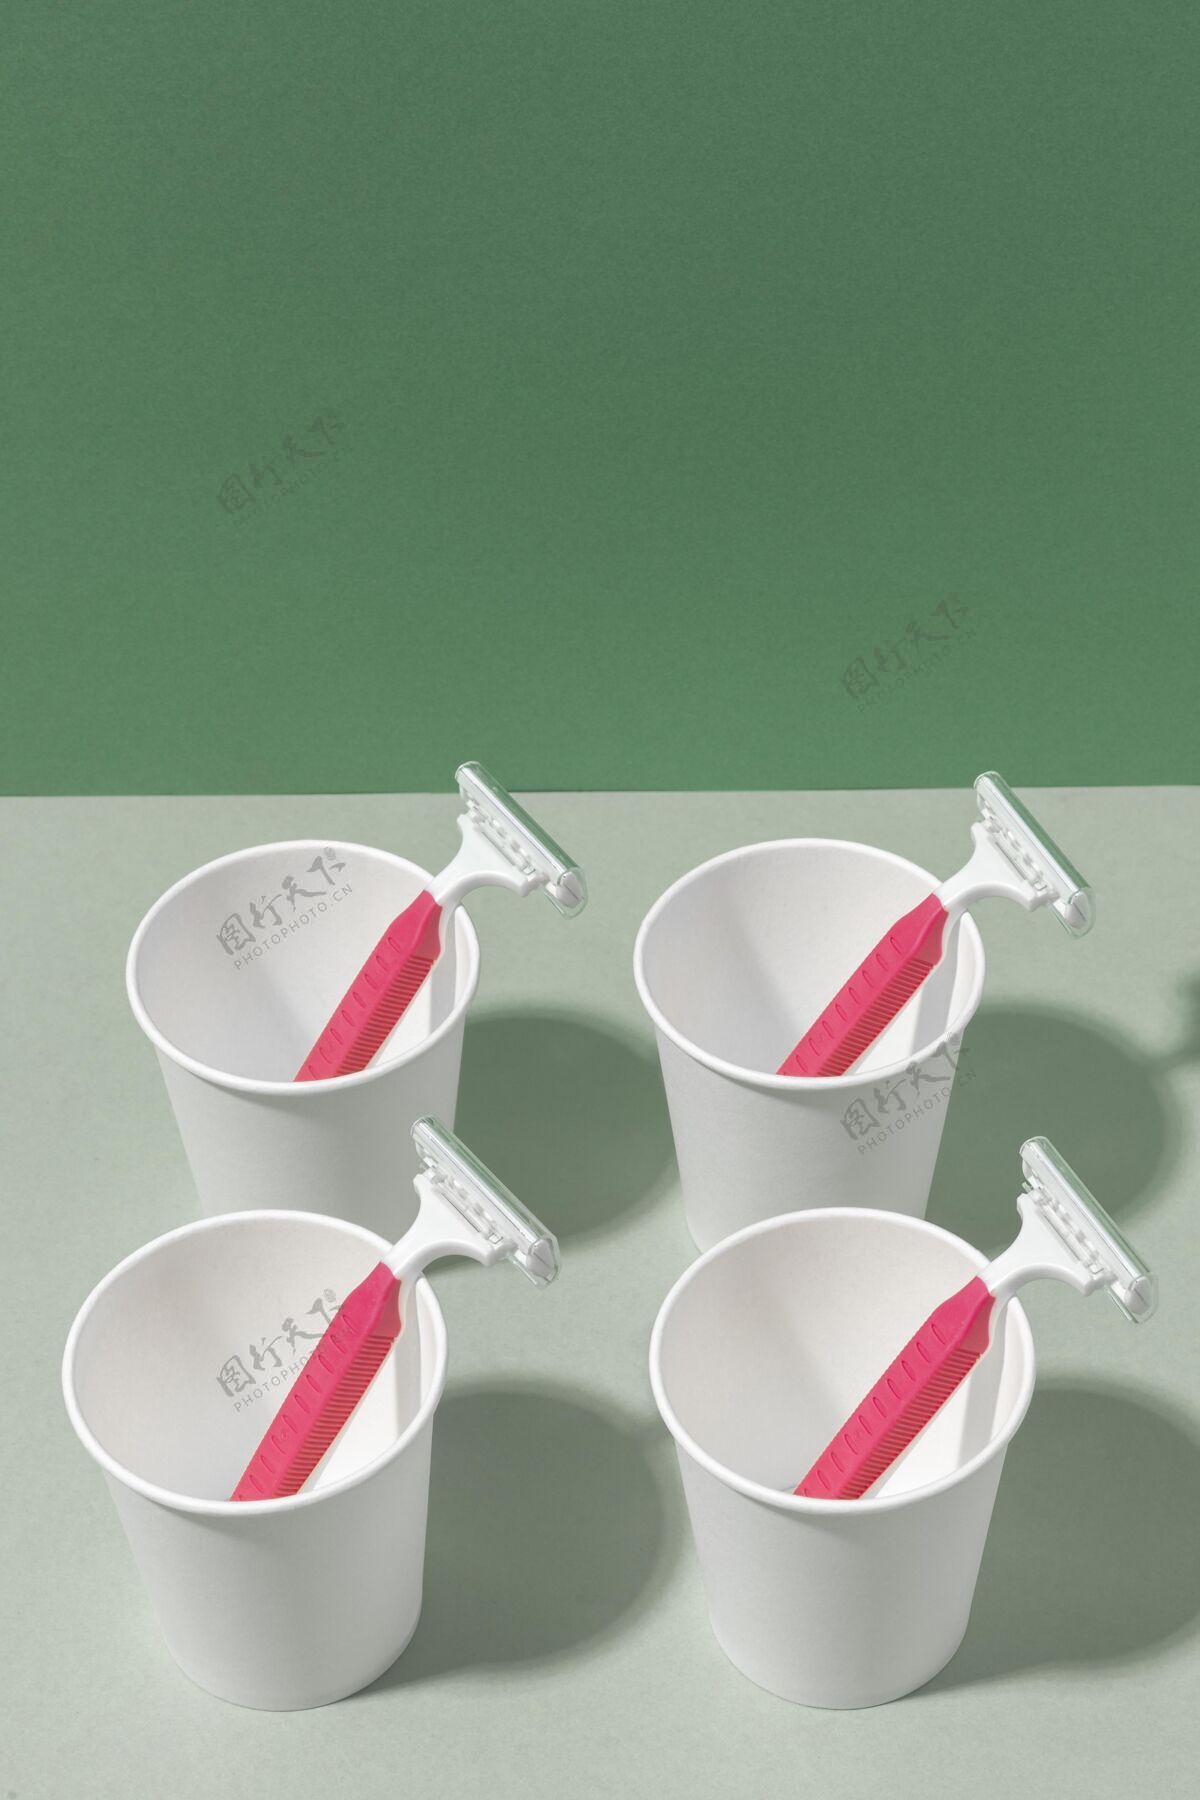 垃圾粉红色剃须刀片和杯子的排列污染产品一次性